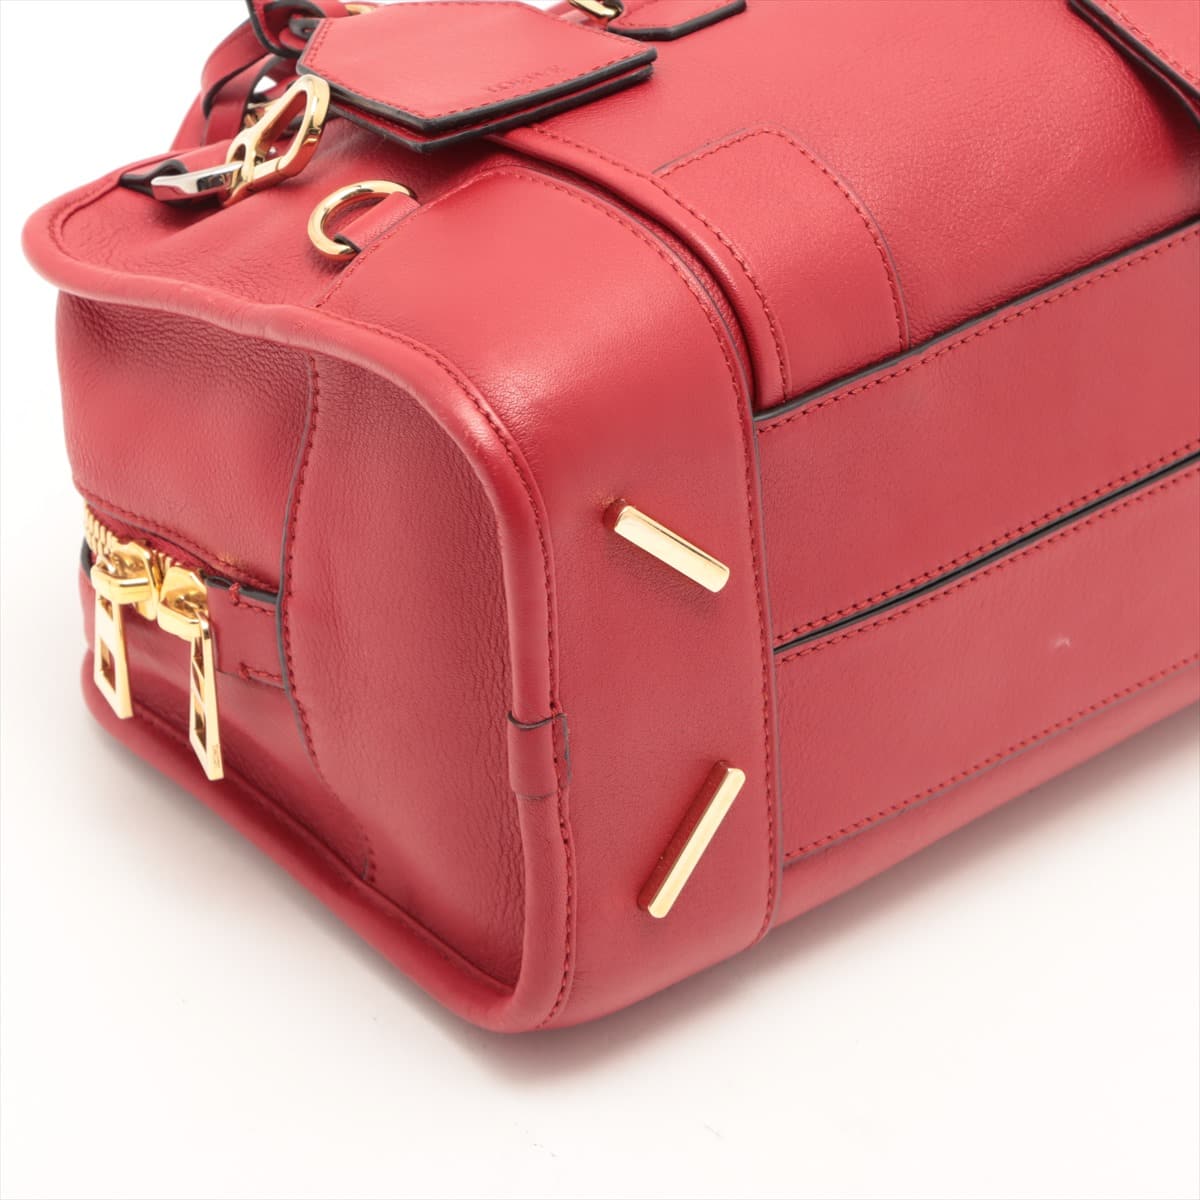 Loewe Amazona 28 Leather 2way handbag Red Multiplication